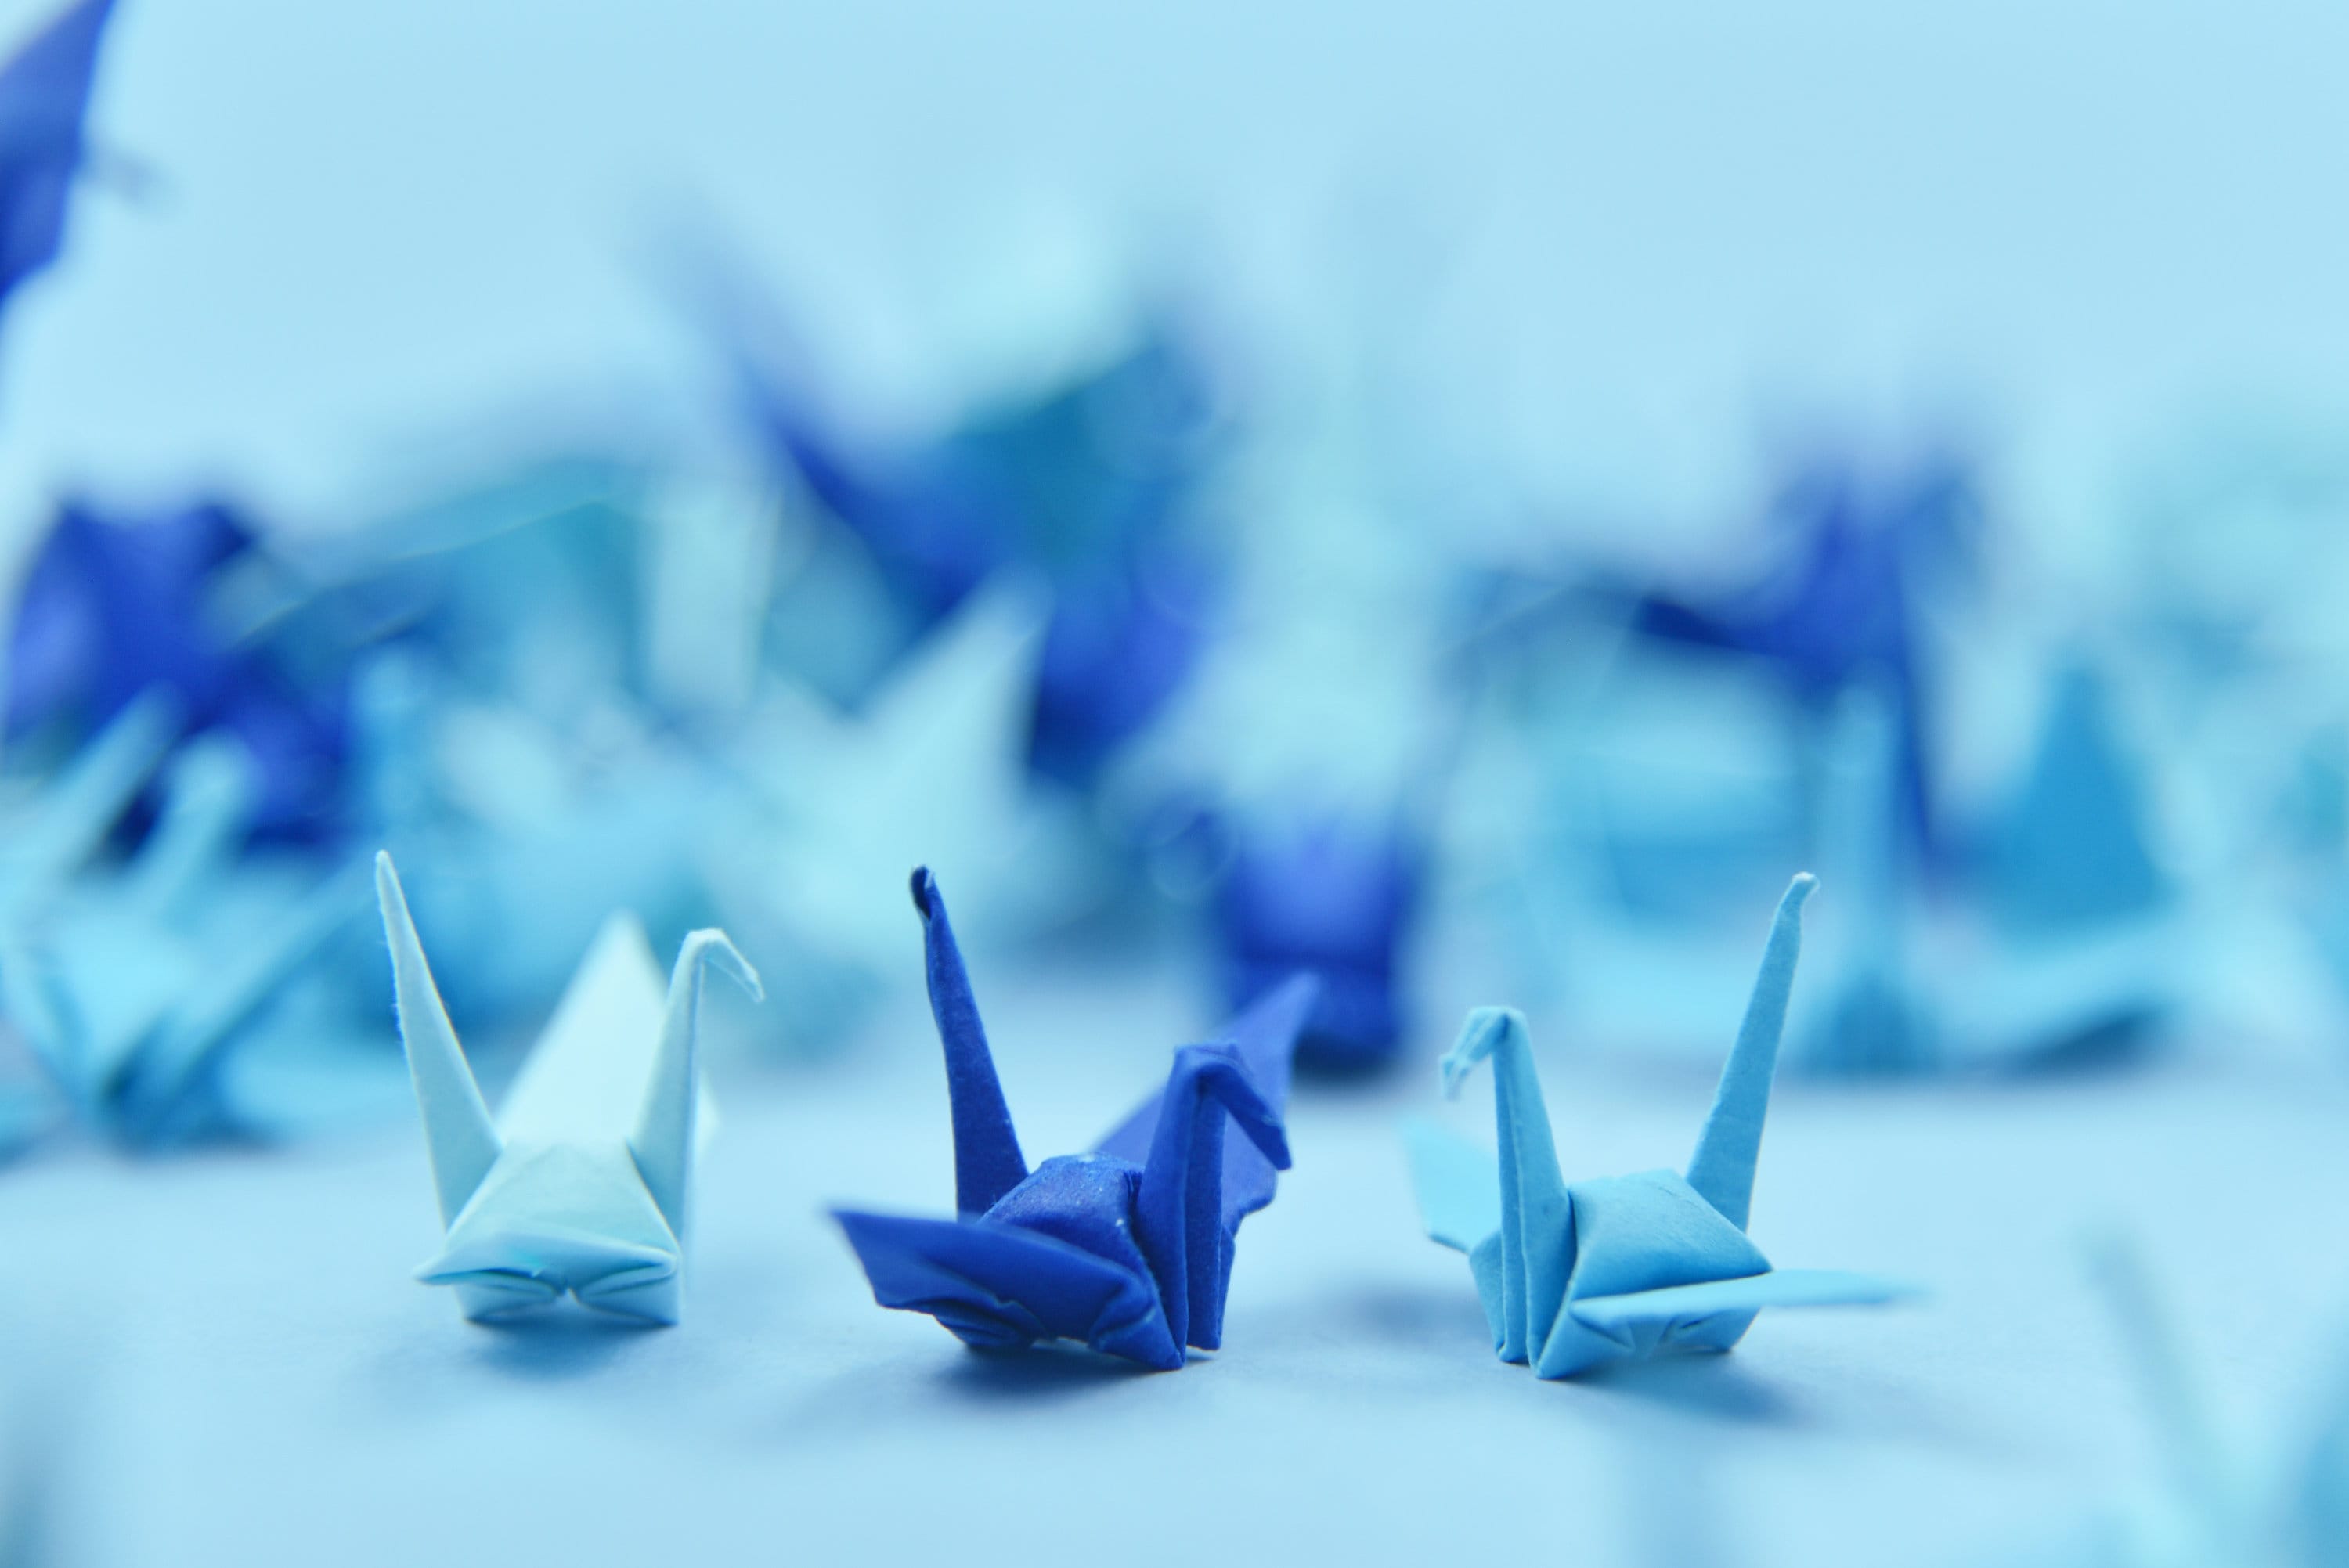 1000 gru di carta origami blu navy - piccola 1,5 pollici - piegata a mano per regalo di decorazione di nozze